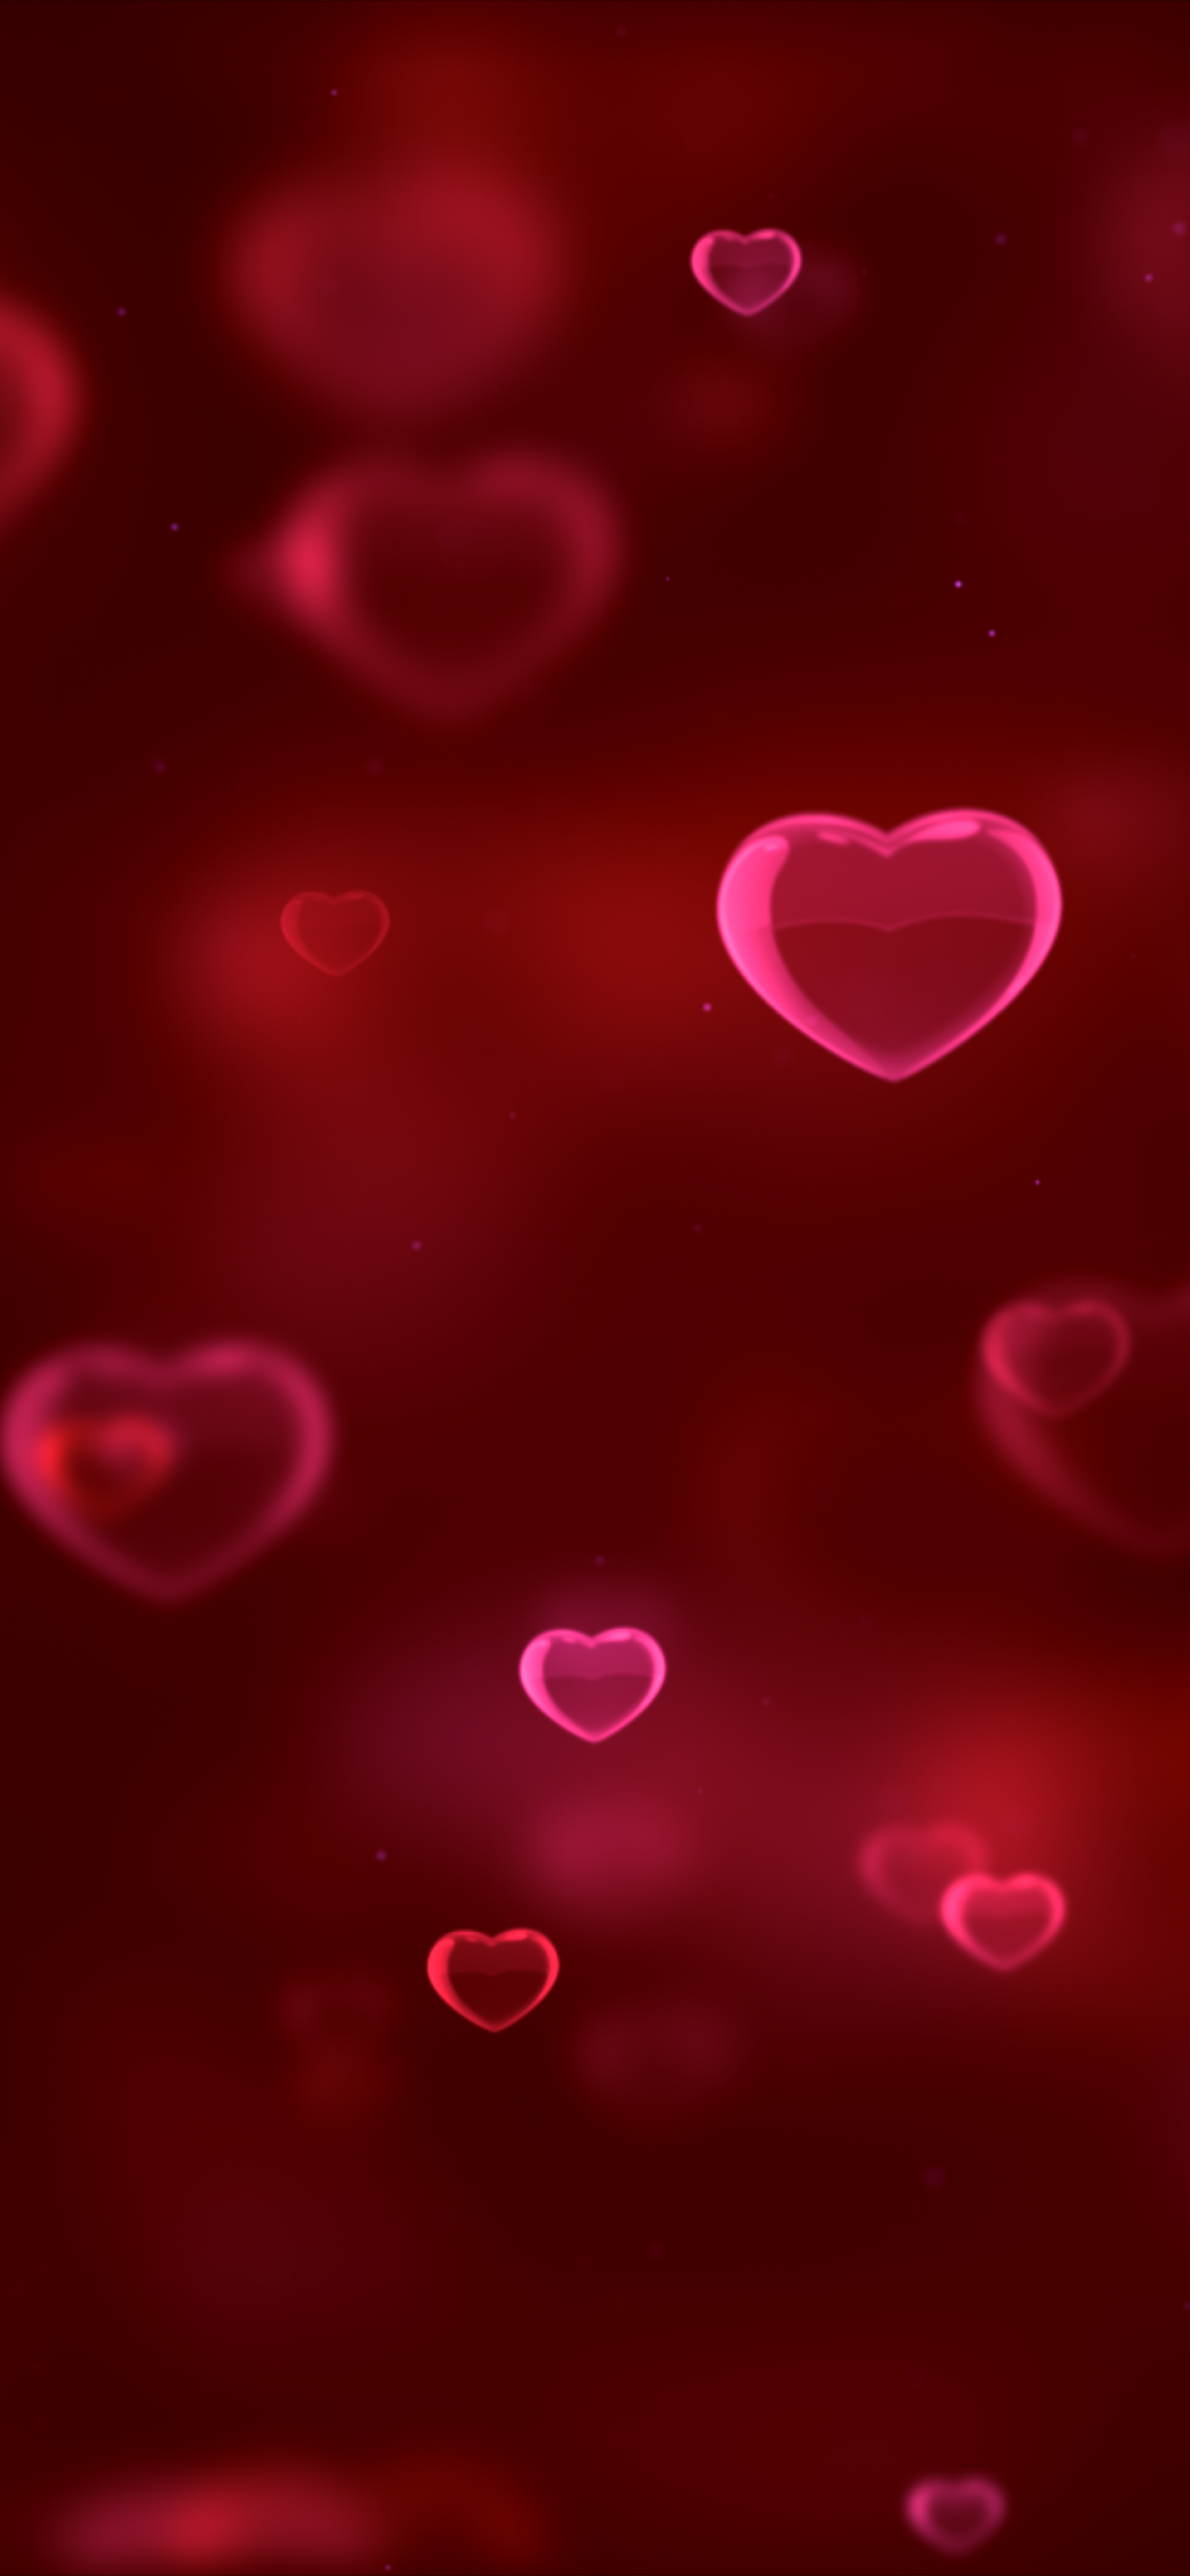 Tình yêu là một chủ đề vô cùng đẹp và thú vị, và bạn có thể tận hưởng niềm đam mê đó qua những hình nền có trái tim màu đỏ nổi bật và ấn tượng này. Thể hiện tình cảm của mình một cách đầy ngọt ngào và lãng mạn trên chiếc điện thoại của mình ngay hôm nay! 